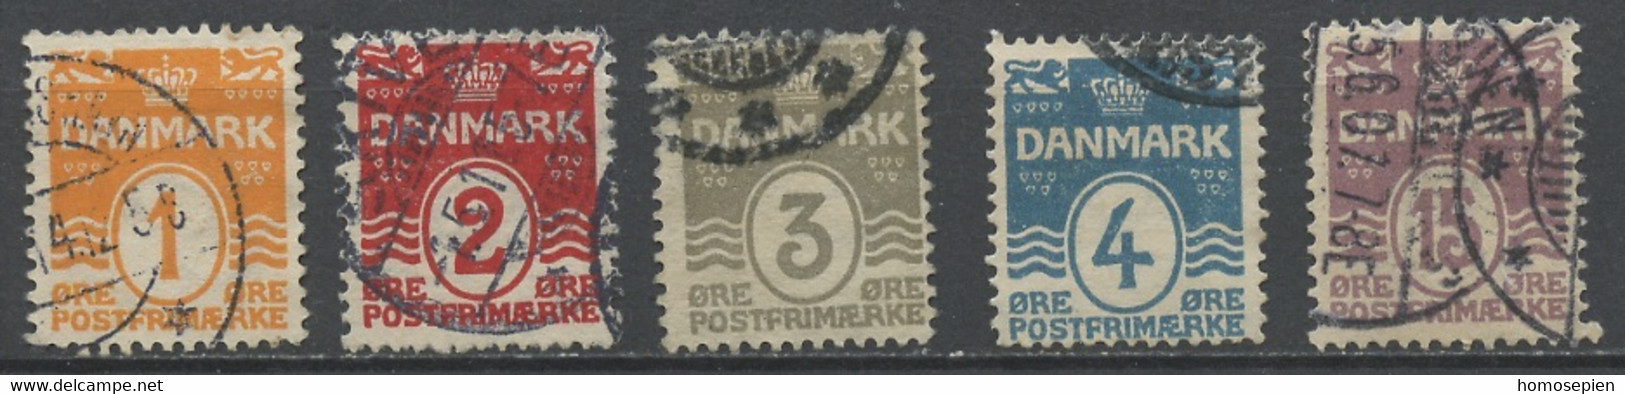 Danemark - Dänemark - Denmark 1905-13 Y&T N°48 à 52 - Michel N°42 à 46 (o) - Chiffre - Used Stamps